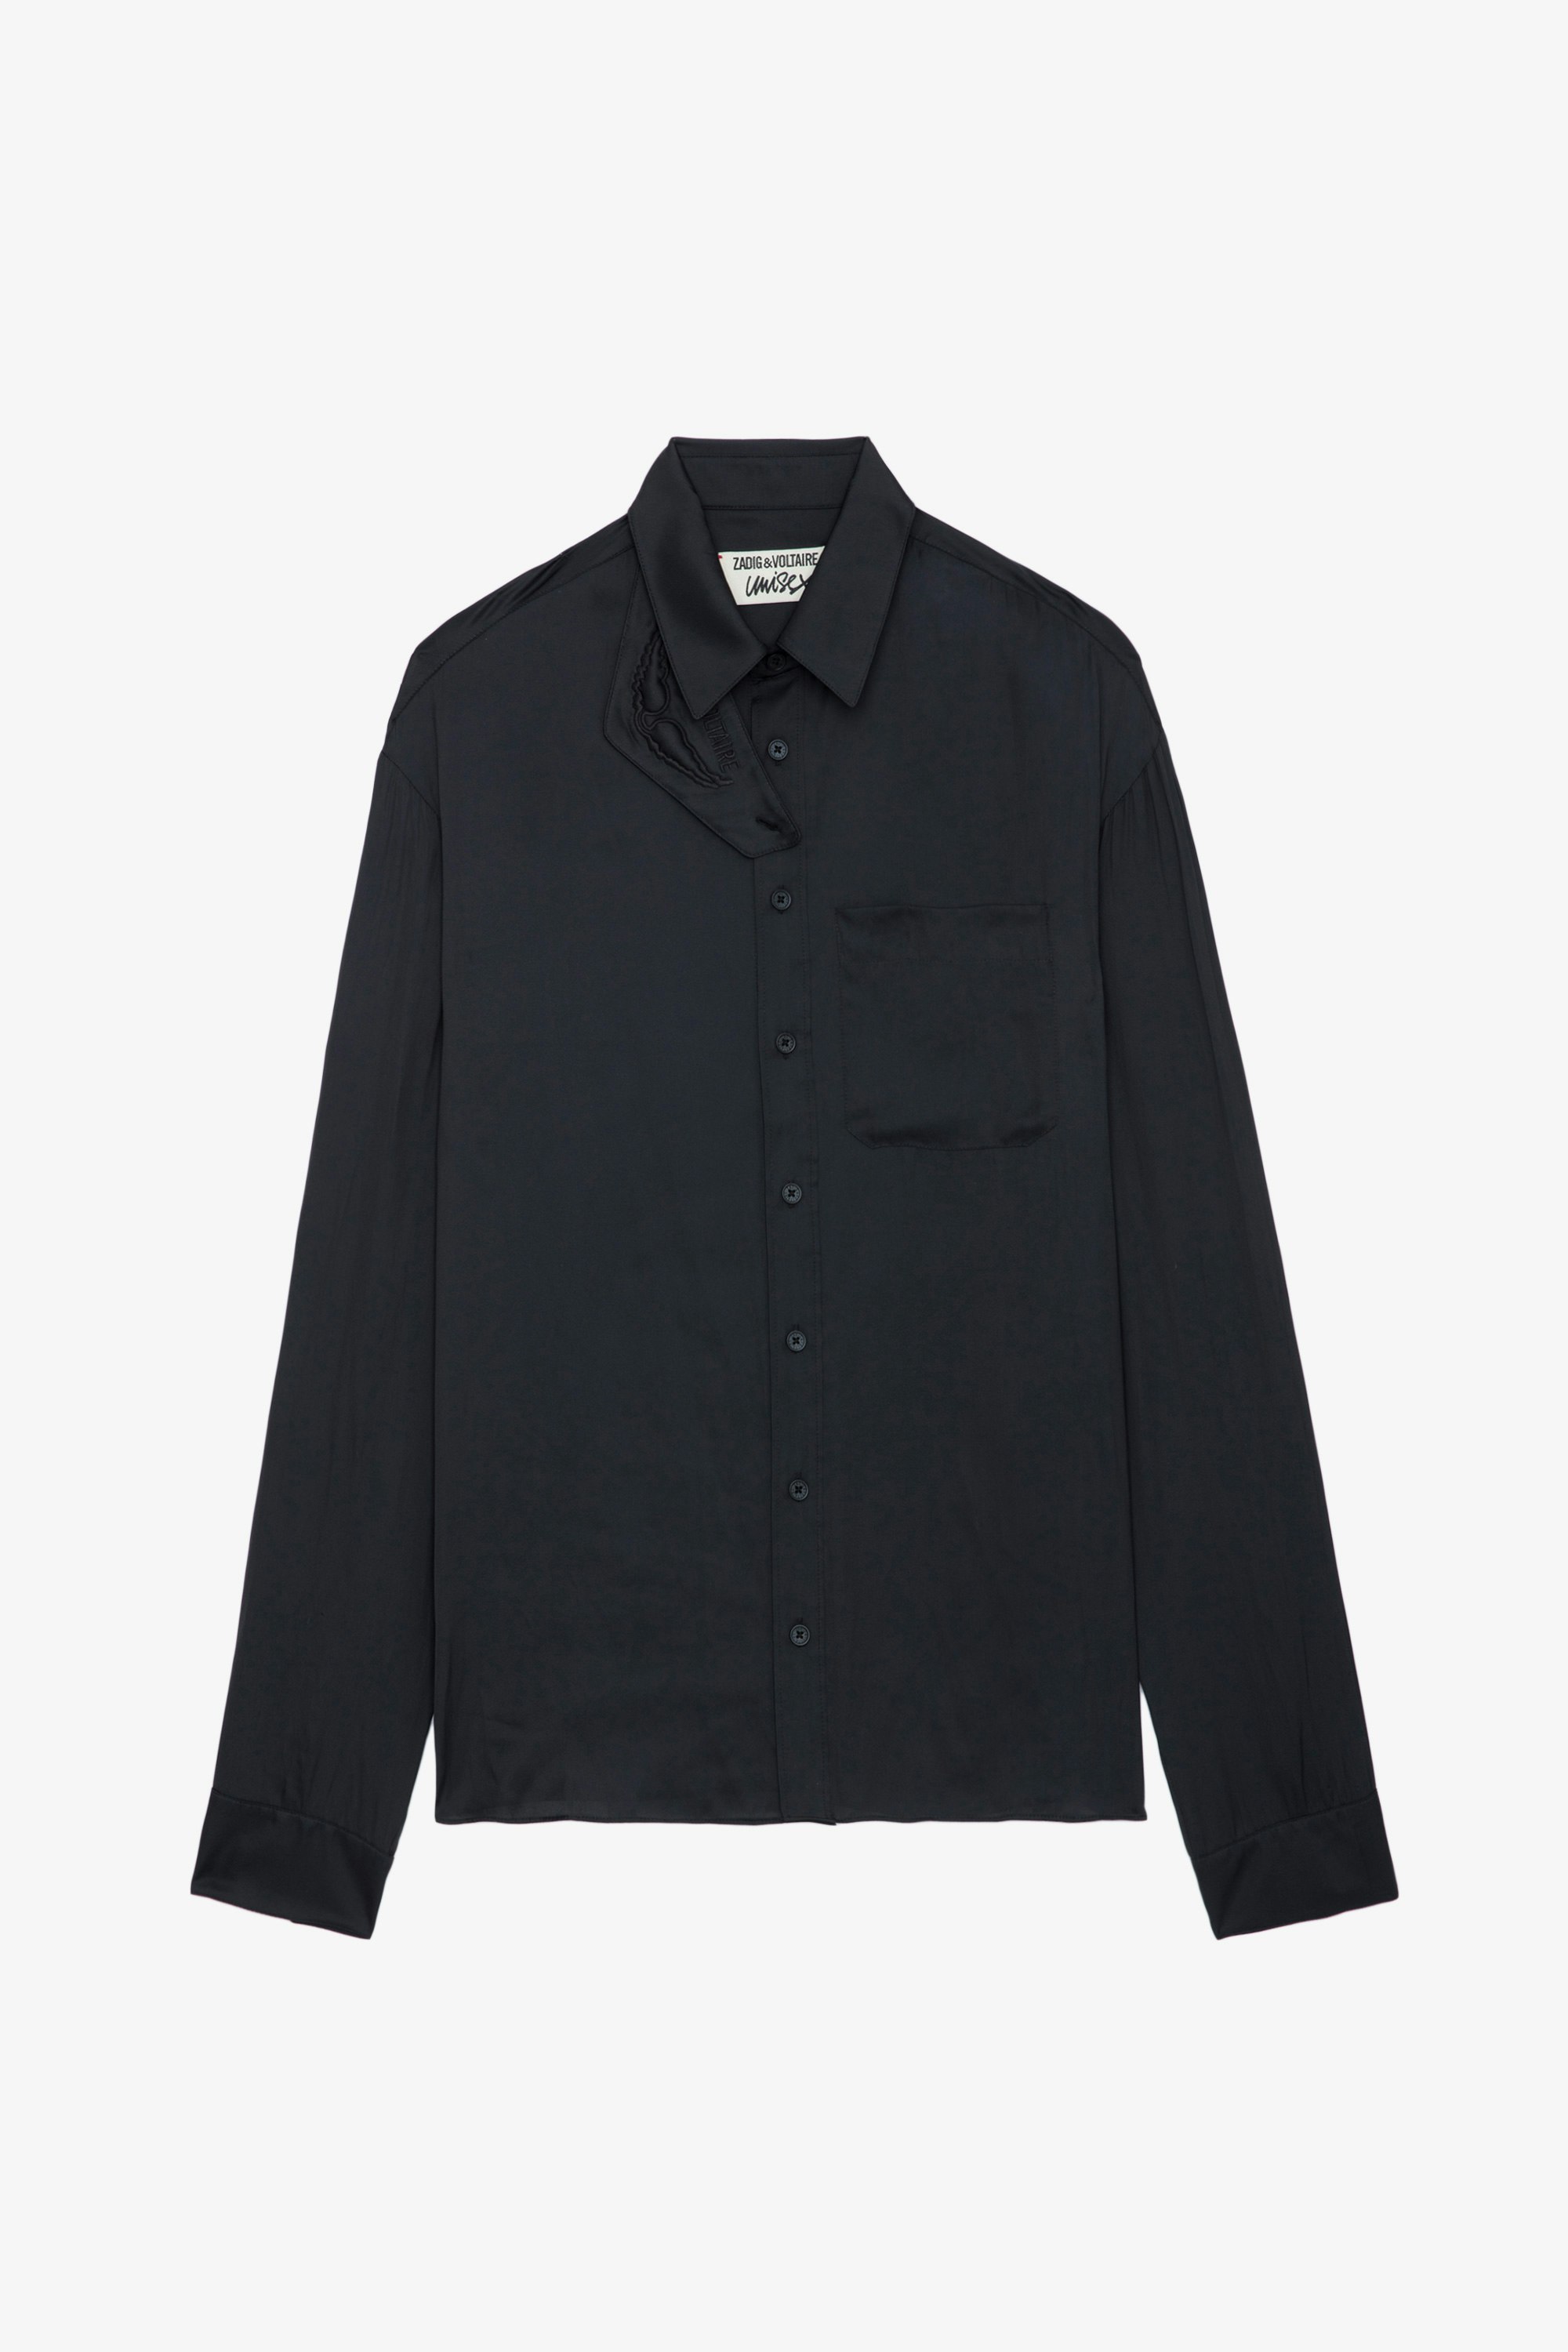 Camisa de Satén Tyrone - Camisa negra de satén con cierre abotonado, bolsillo y cuello con protección desmontable.